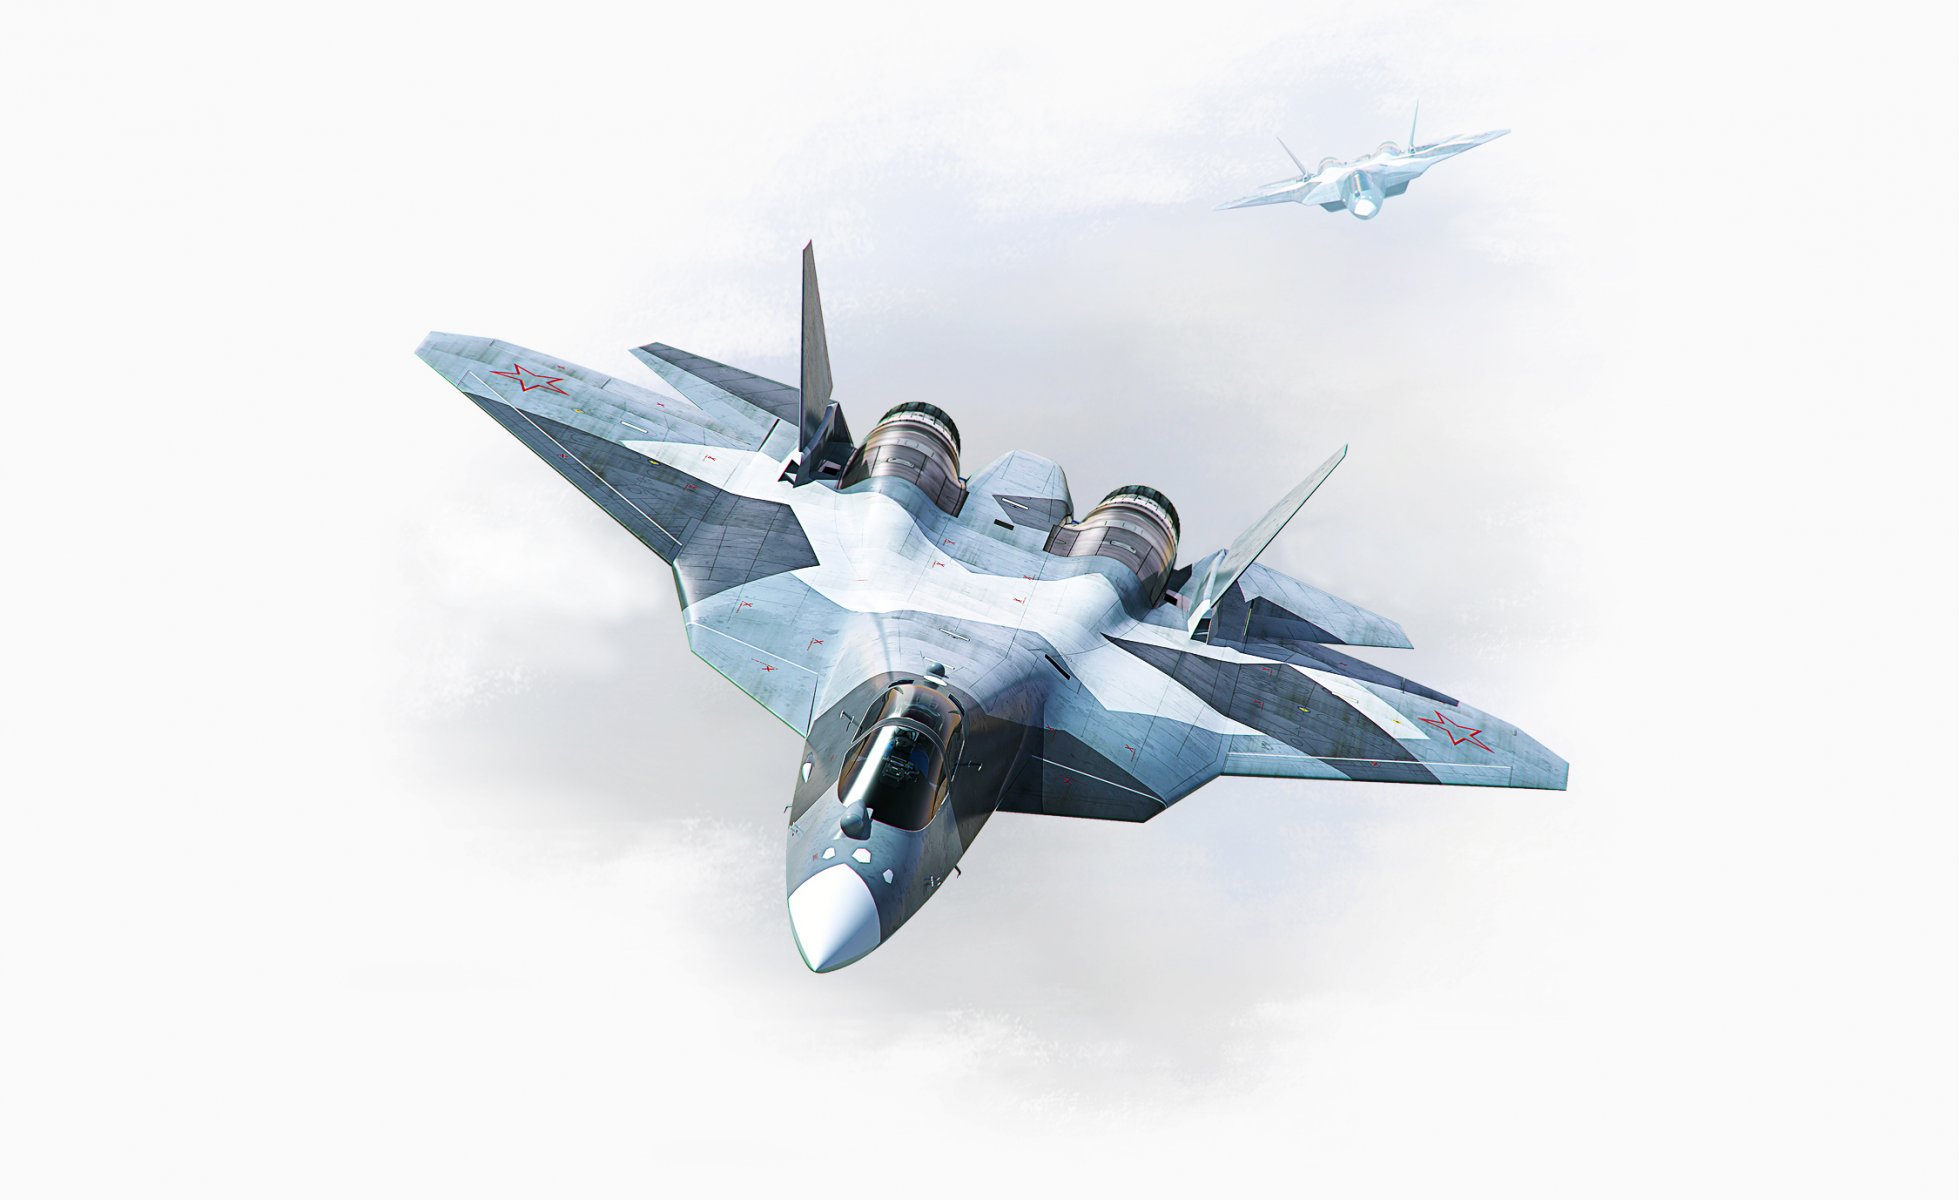 пак фа т-50 авиация многоцелевой истребитель ввс россия рисунок летит самолет два кабина крылья нос